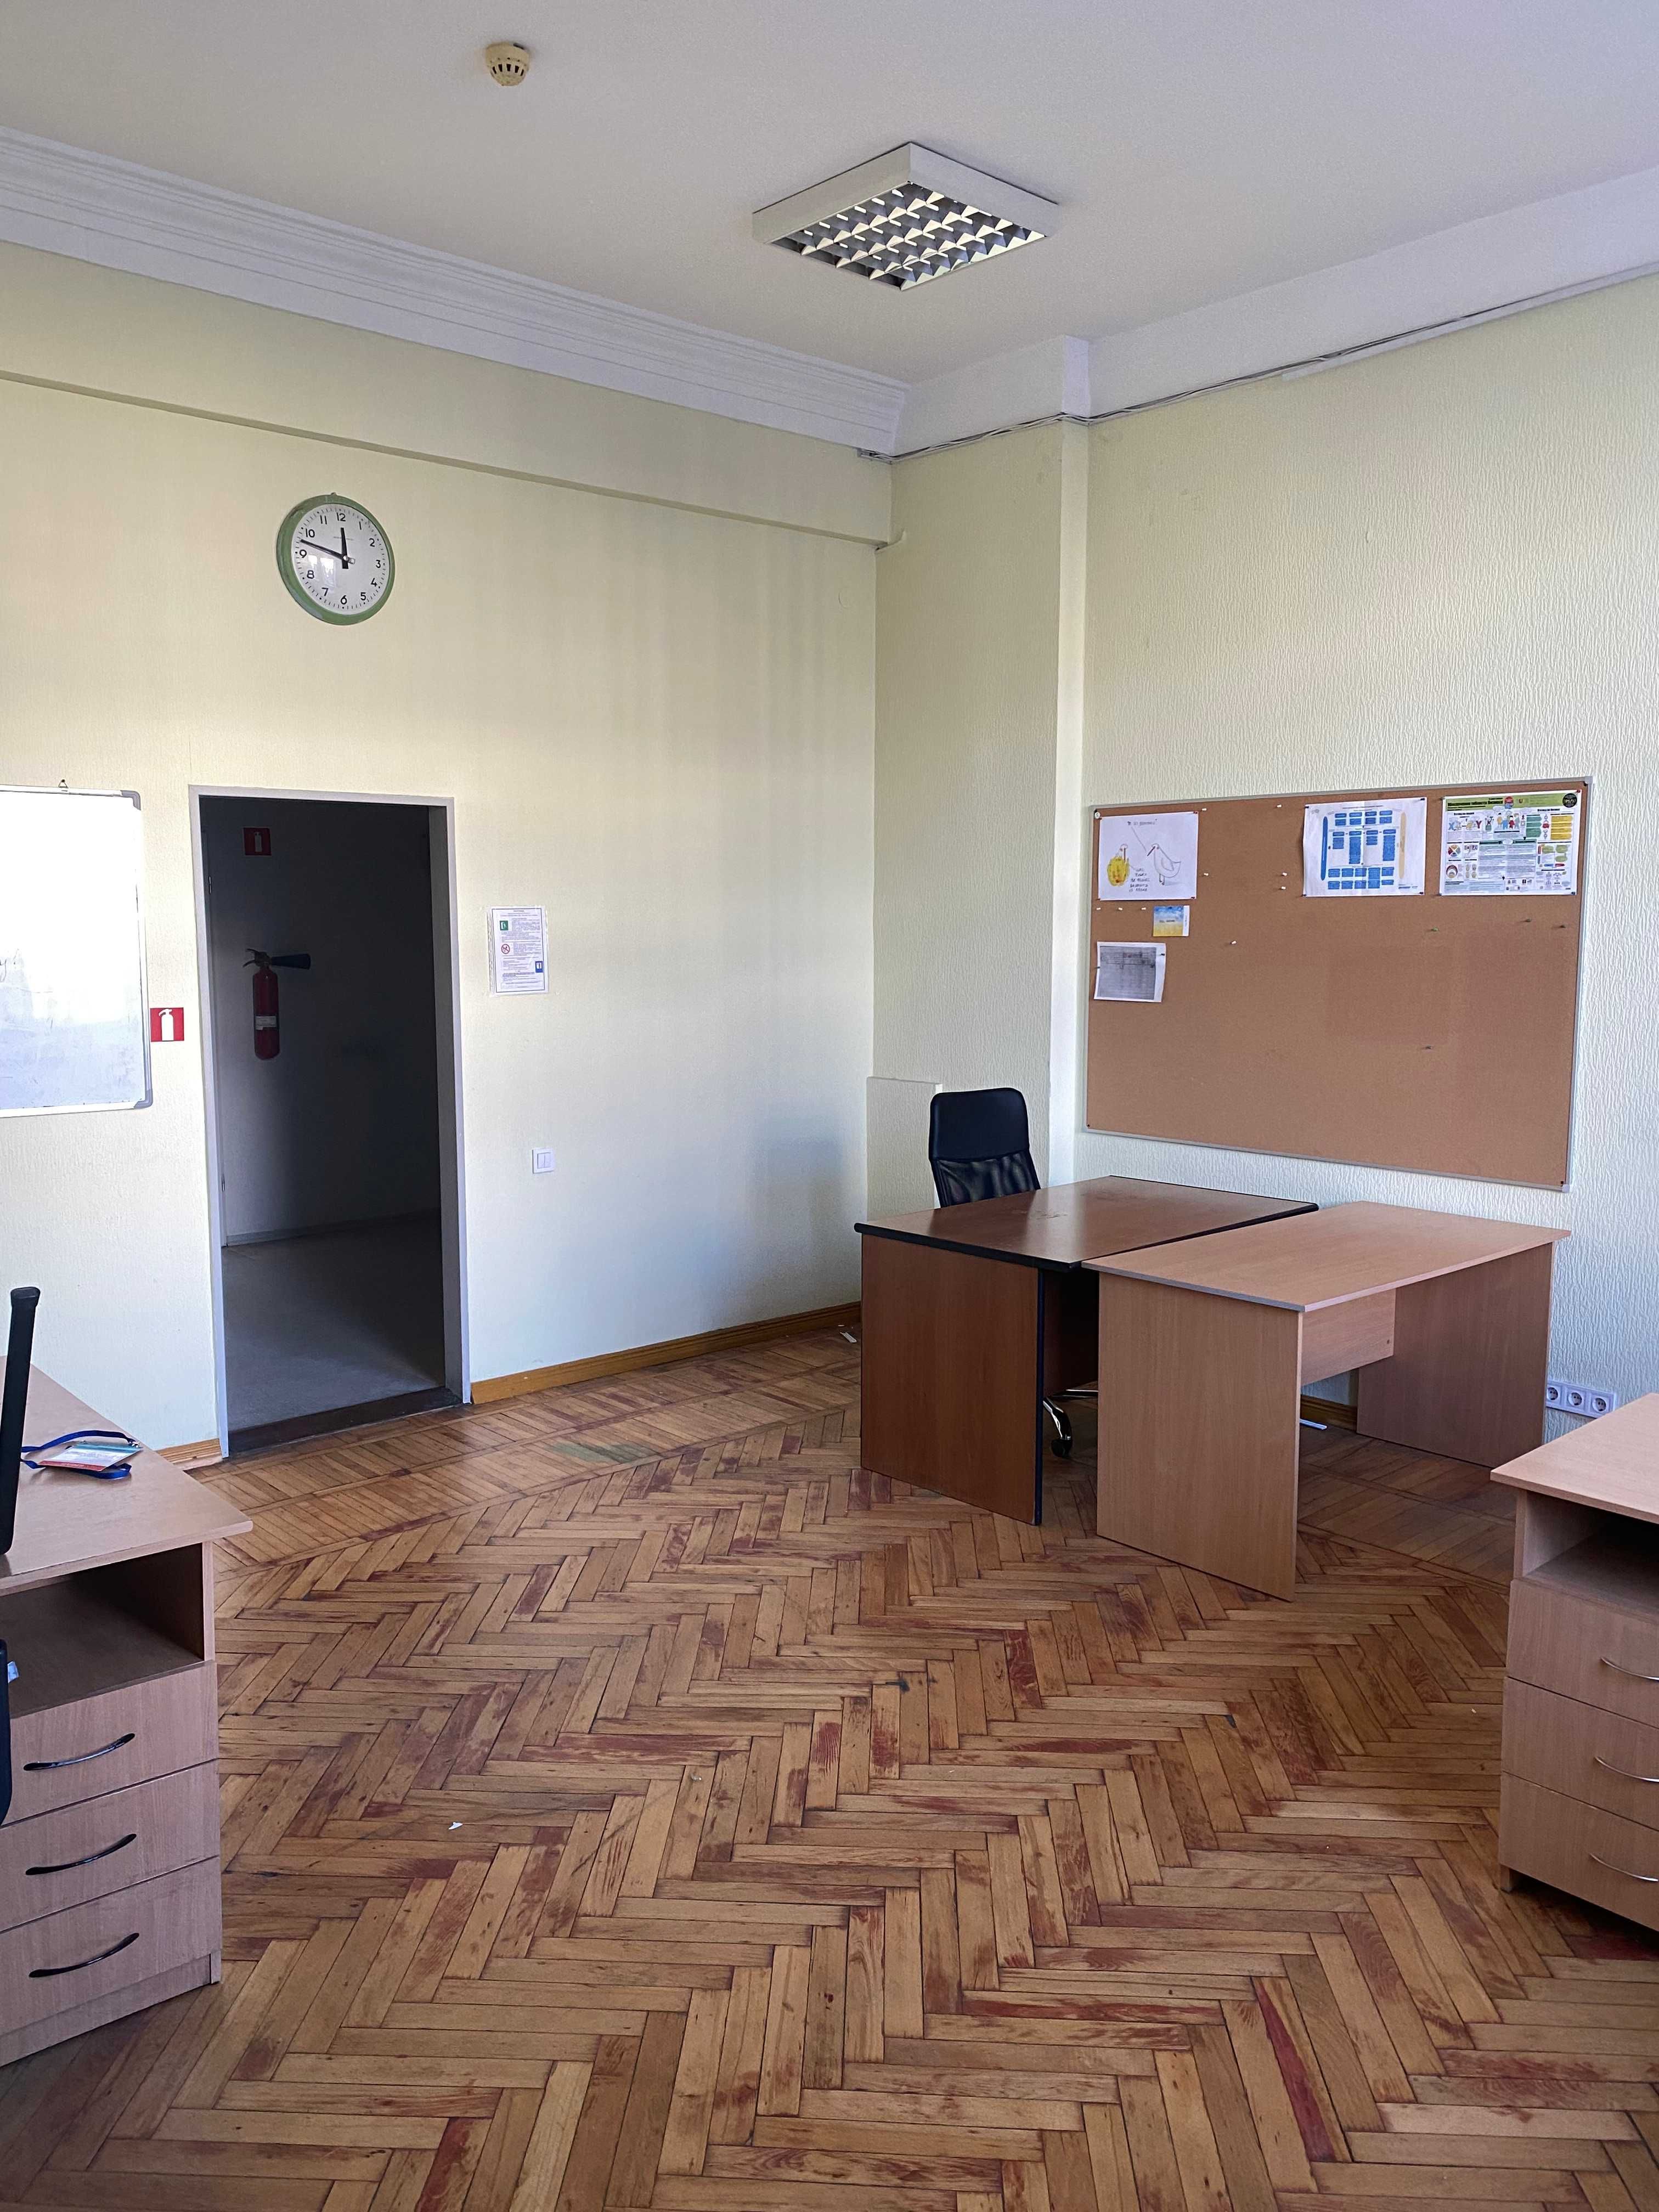 ОРЕНДА- частини приміщення під розміщення офісу, 30,6 кв.м. в м. Київ!